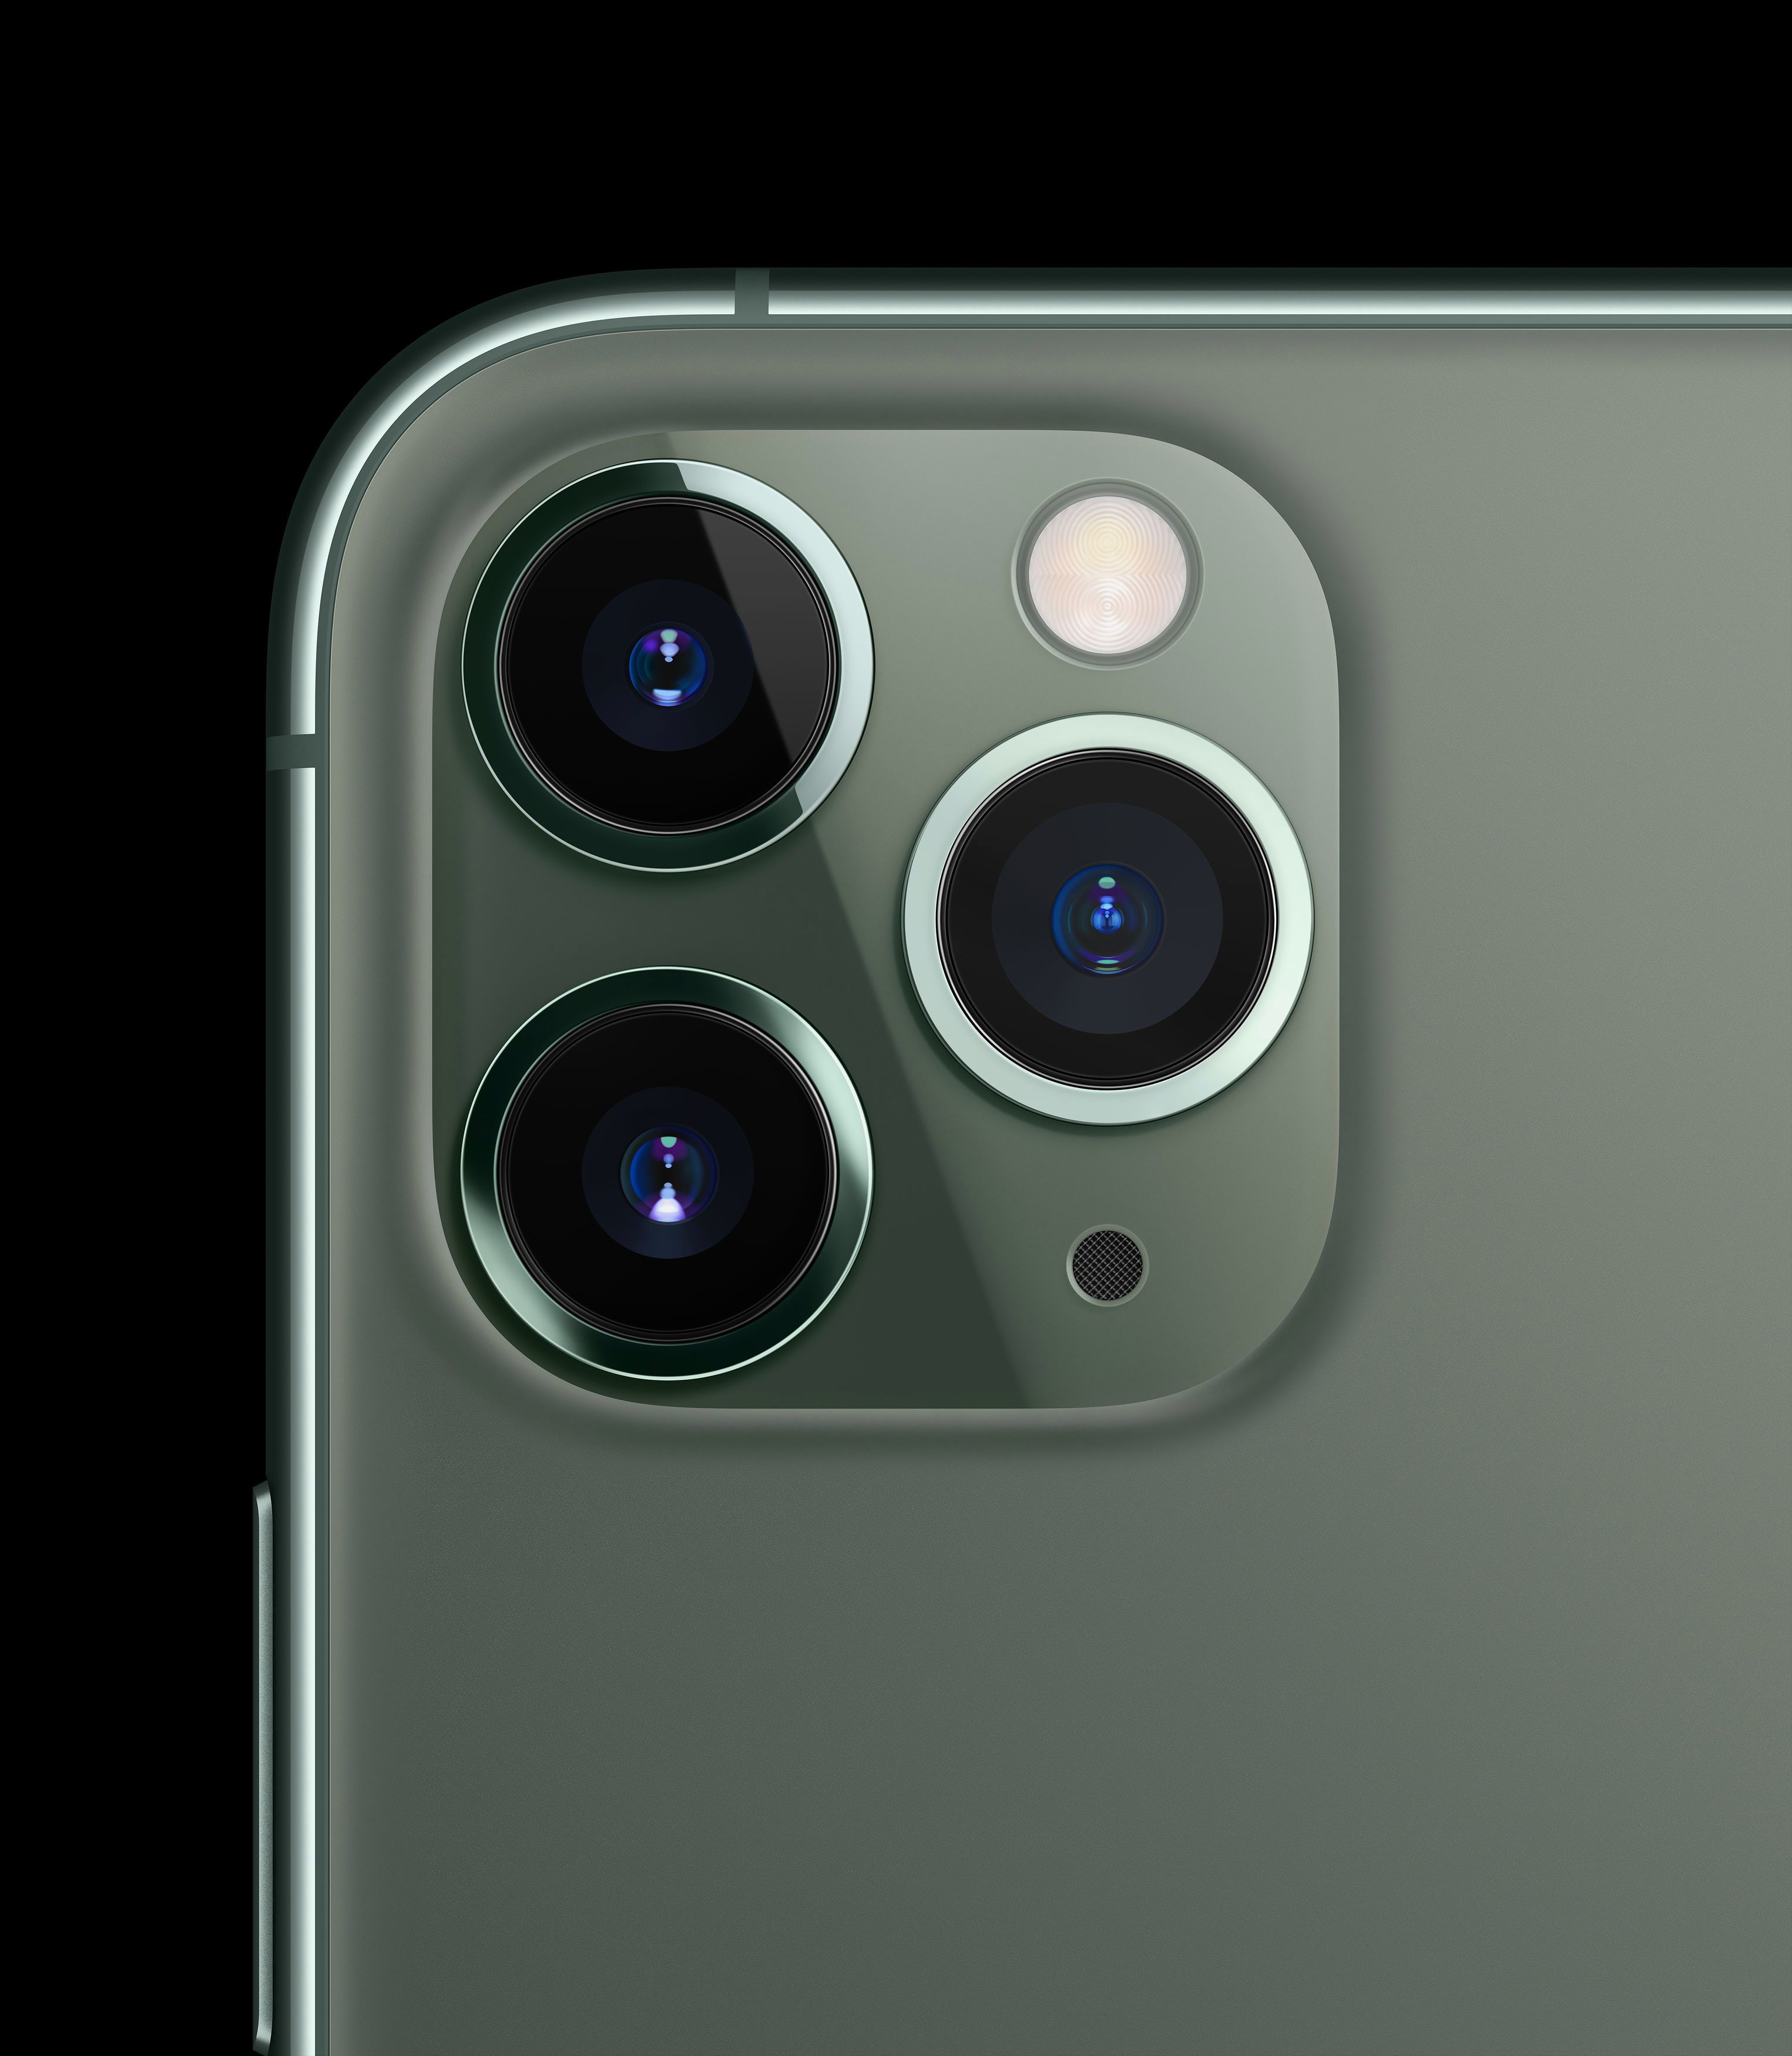  Desain iPhone 11 Pro memiliki kamera telefoto 12 megapiksel, dengan bukaan f/2.0 yang lebih besar, panjang fokus 52mm dan begitu pula OIS